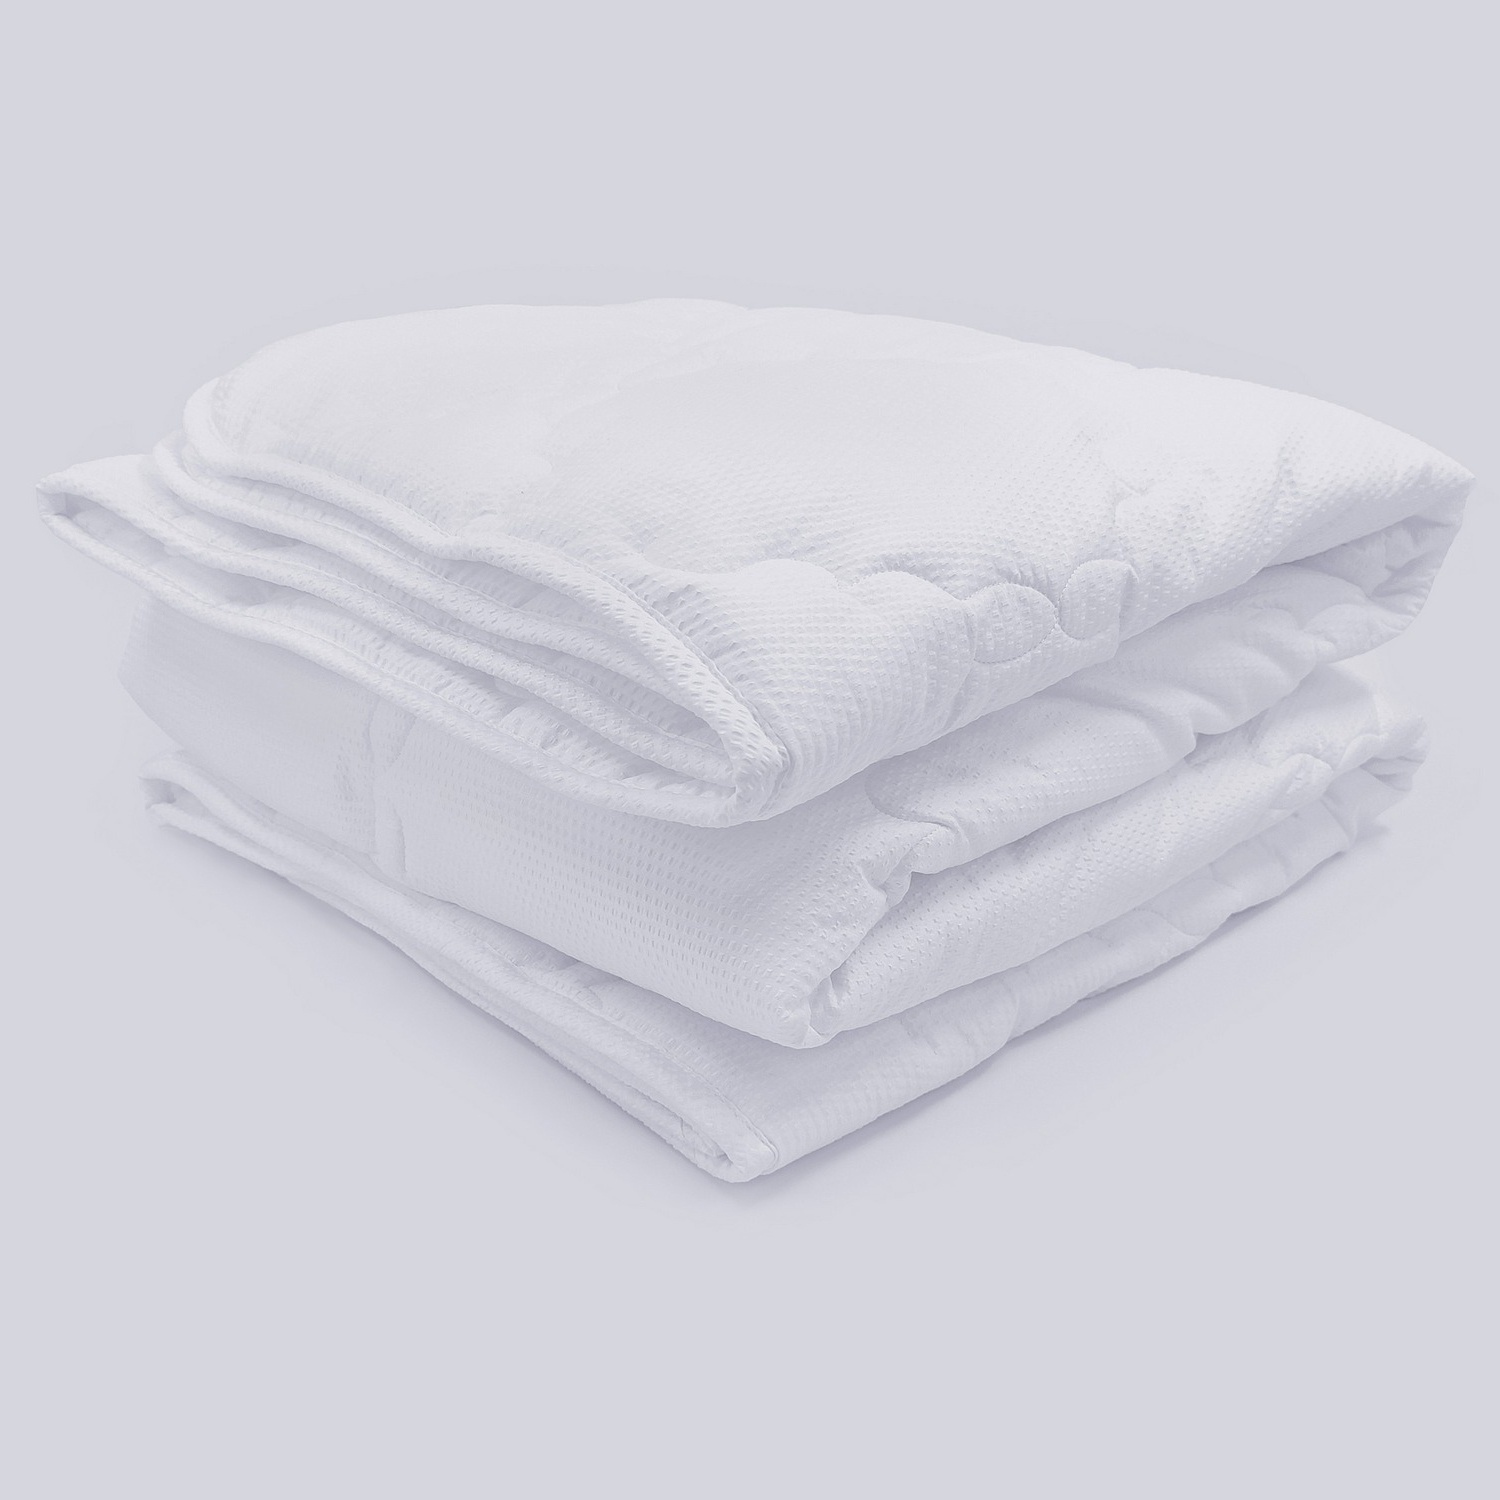 Одеяло Теплое Relax warm цвет: белый (172х205 см), размер 172х205 см jsl882906 Одеяло Теплое Relax warm цвет: белый (172х205 см) - фото 1